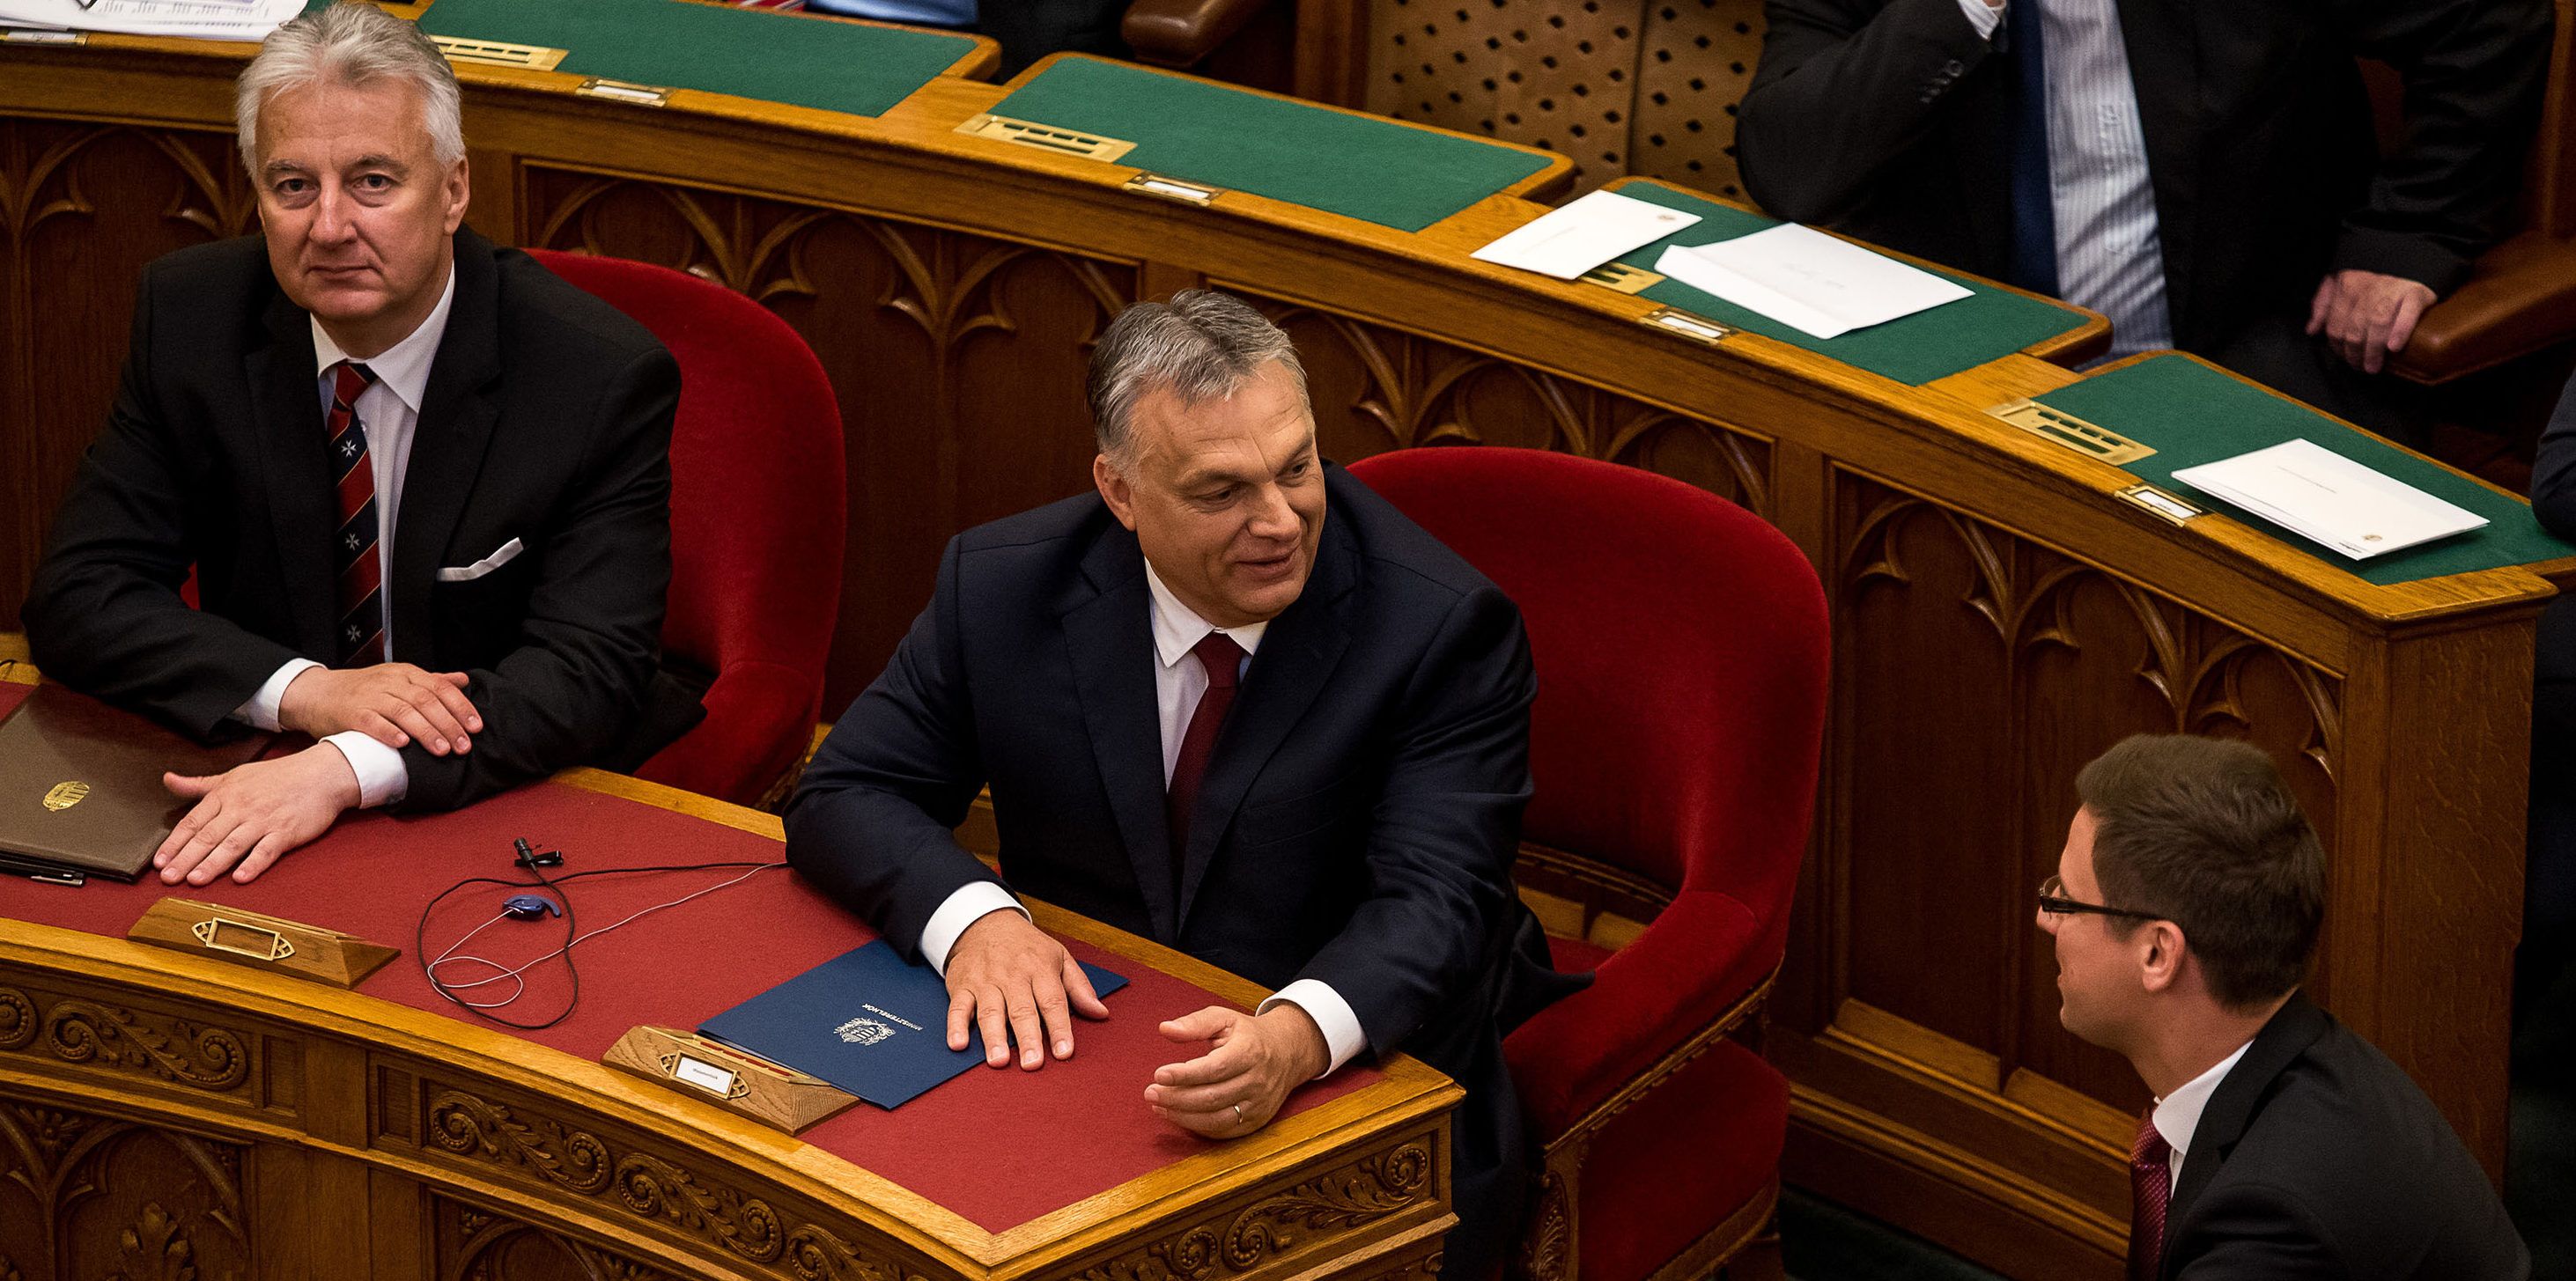 Jelentősen elszakadt egymástól a magyar átlagbér és a képviselők fizetése